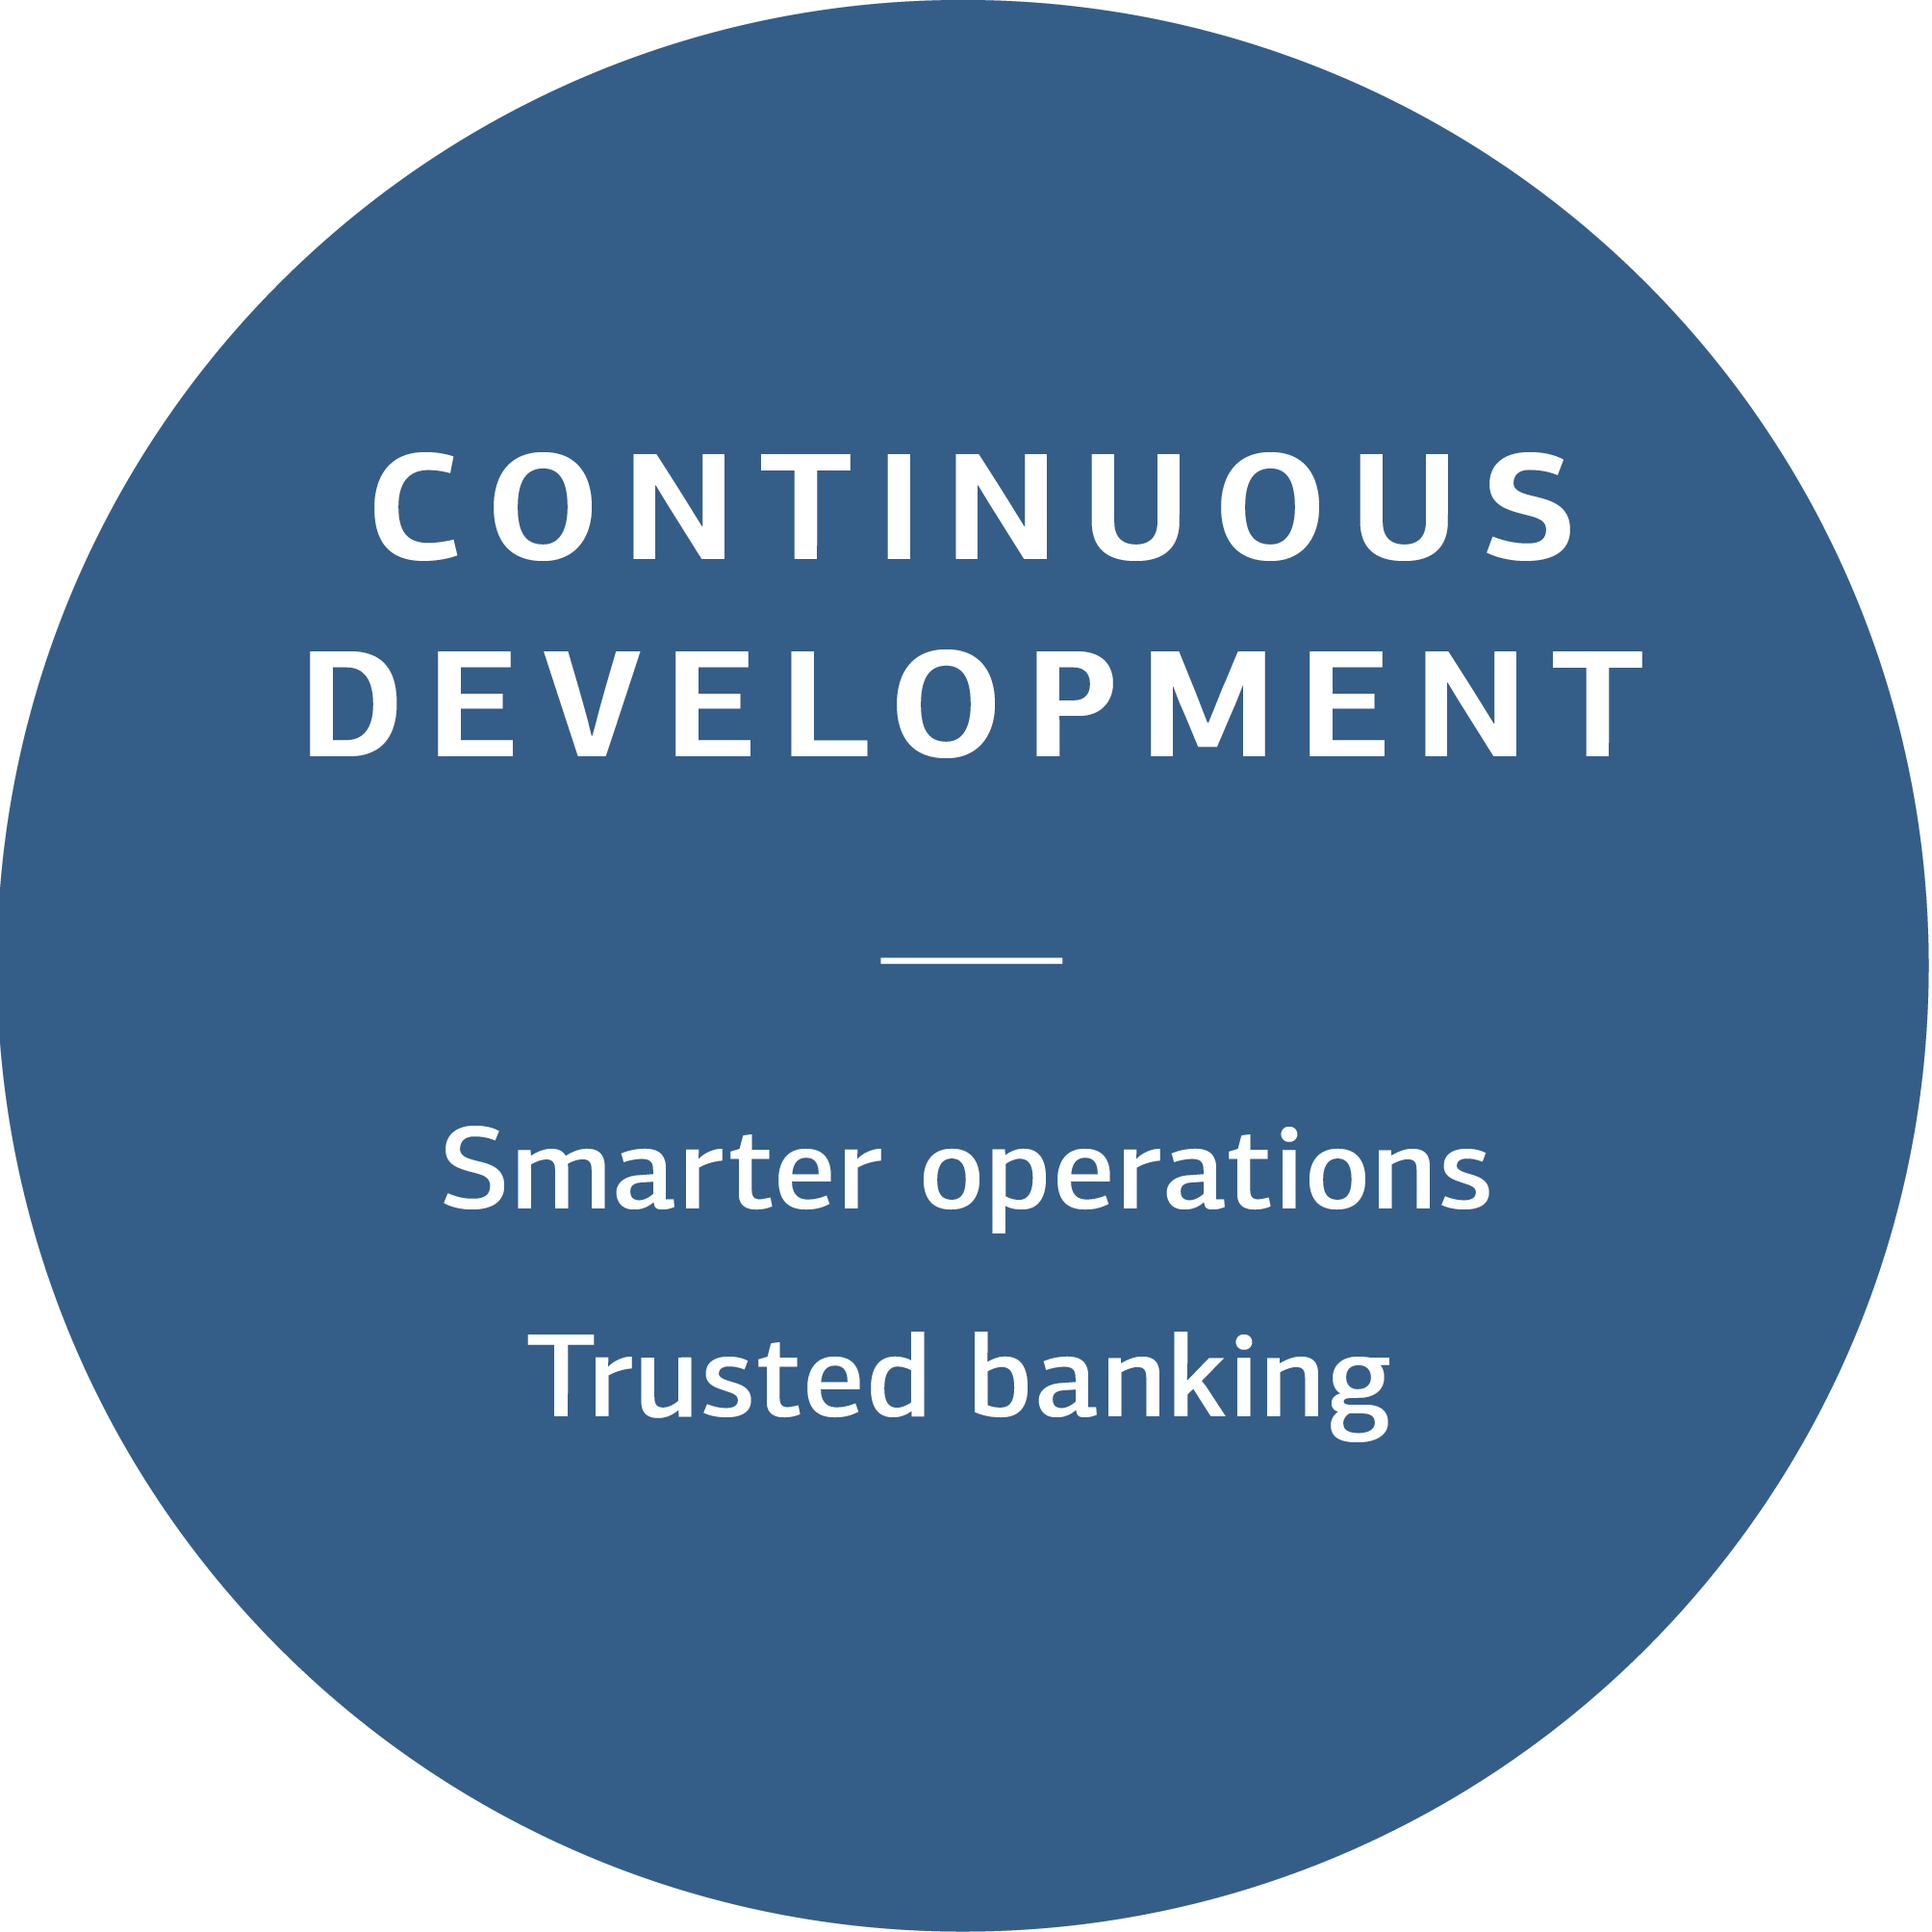 Continuous development